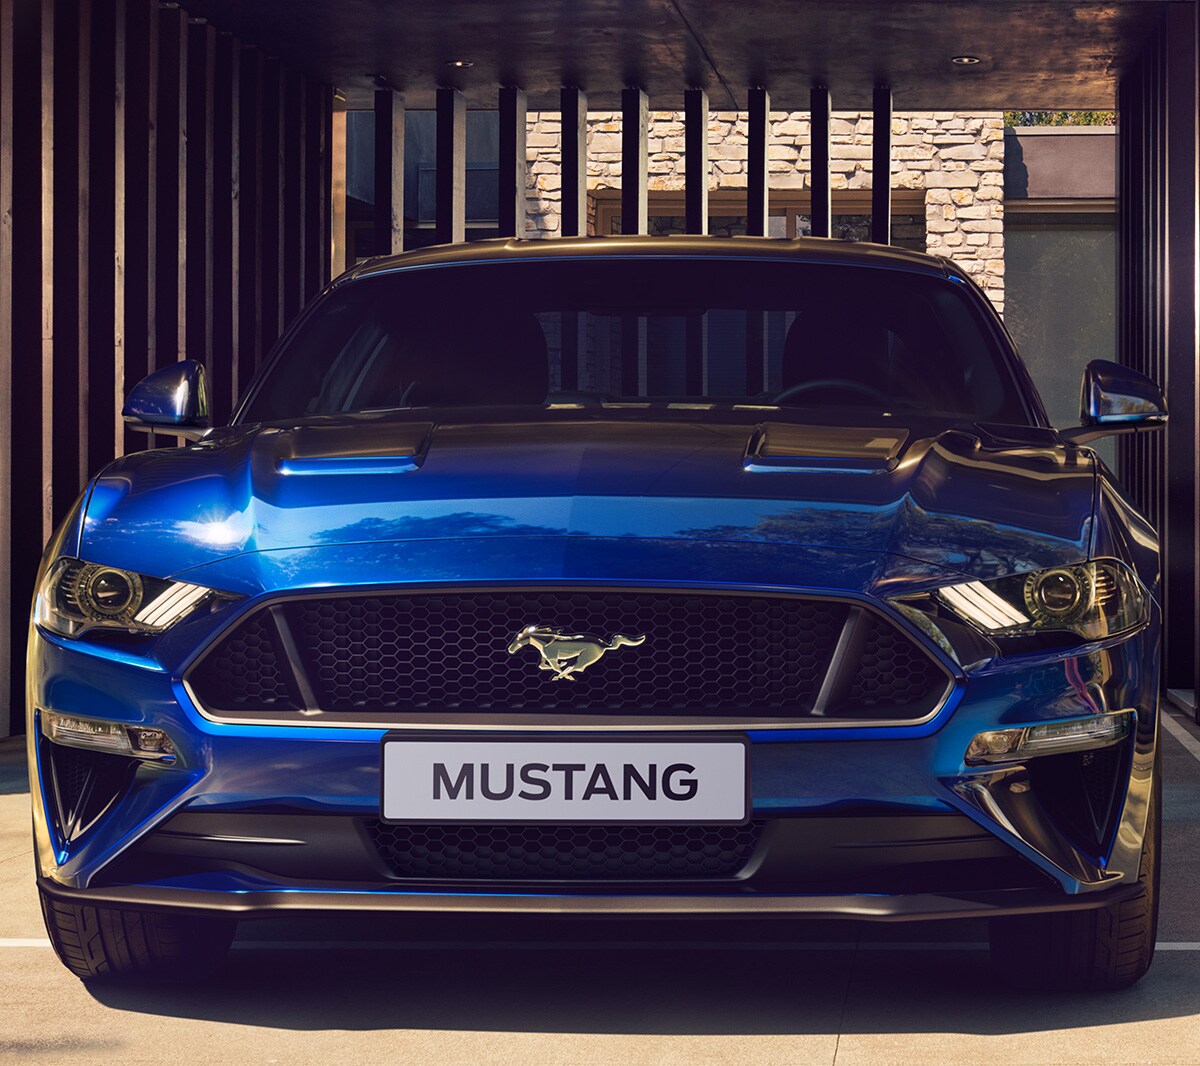 Ford Mustang GT blu parcheggiata vicino al cancello della griglia